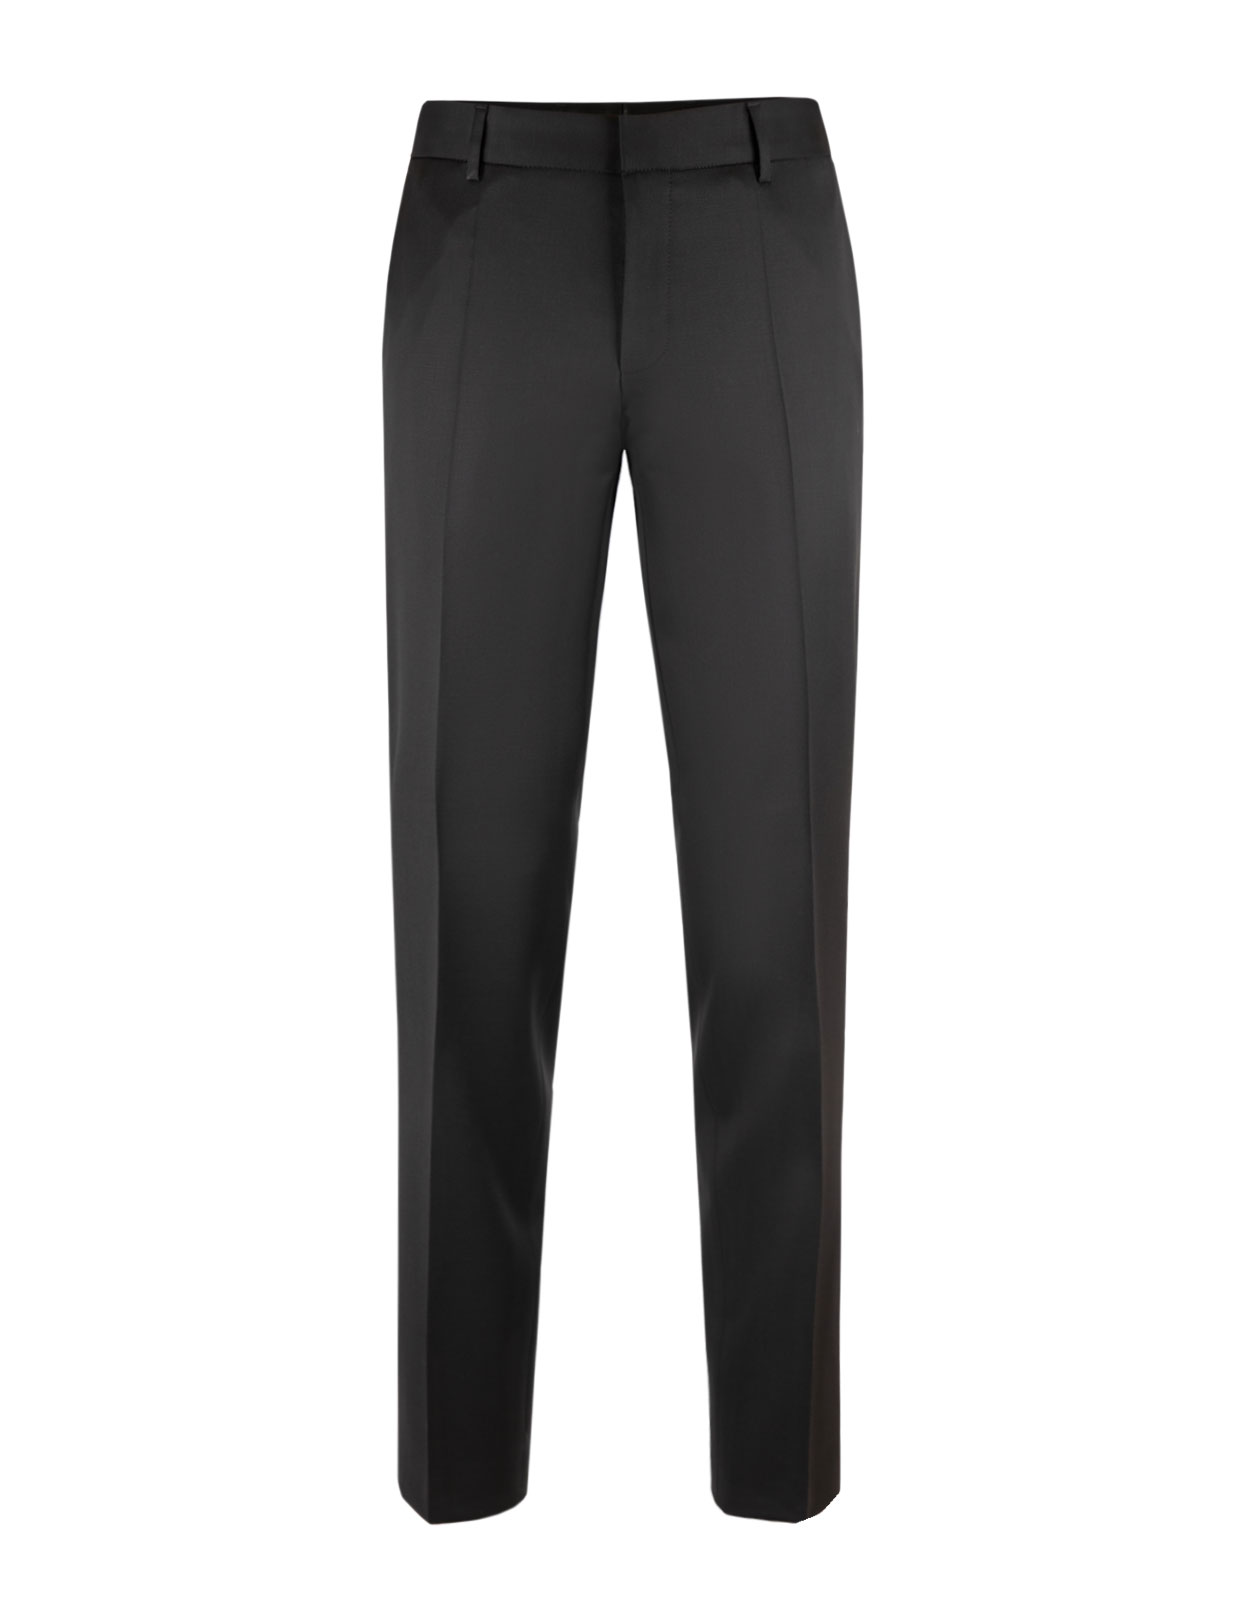 H-Genius Suit Trousers Slim Fit Mix & Match Black Stl 46